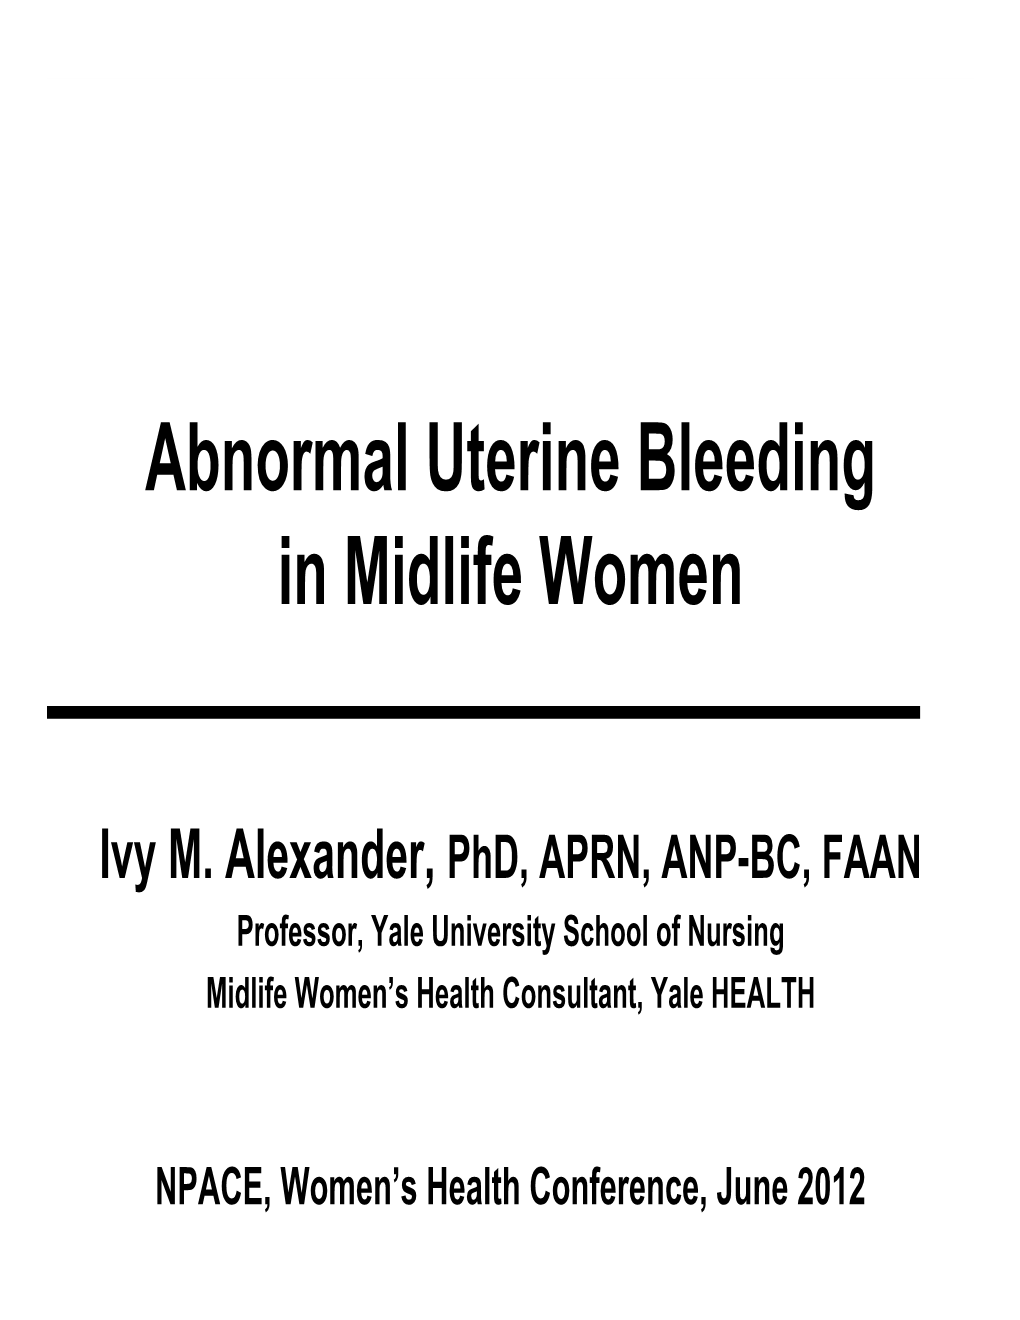 Abnormal Uterine Bleeding in Midlife Women